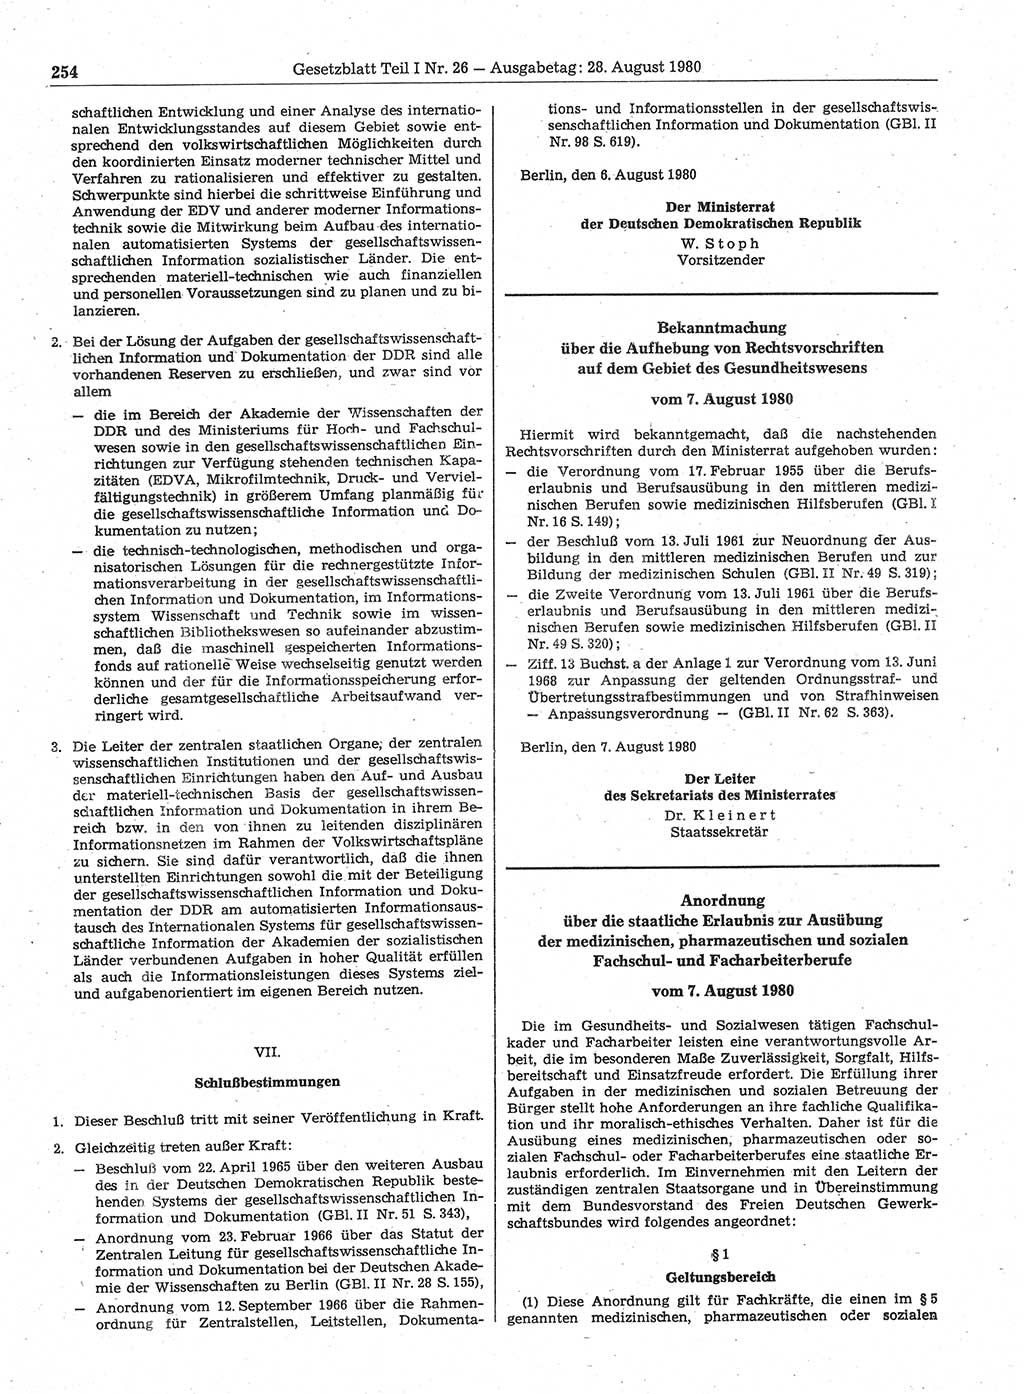 Gesetzblatt (GBl.) der Deutschen Demokratischen Republik (DDR) Teil Ⅰ 1980, Seite 254 (GBl. DDR Ⅰ 1980, S. 254)